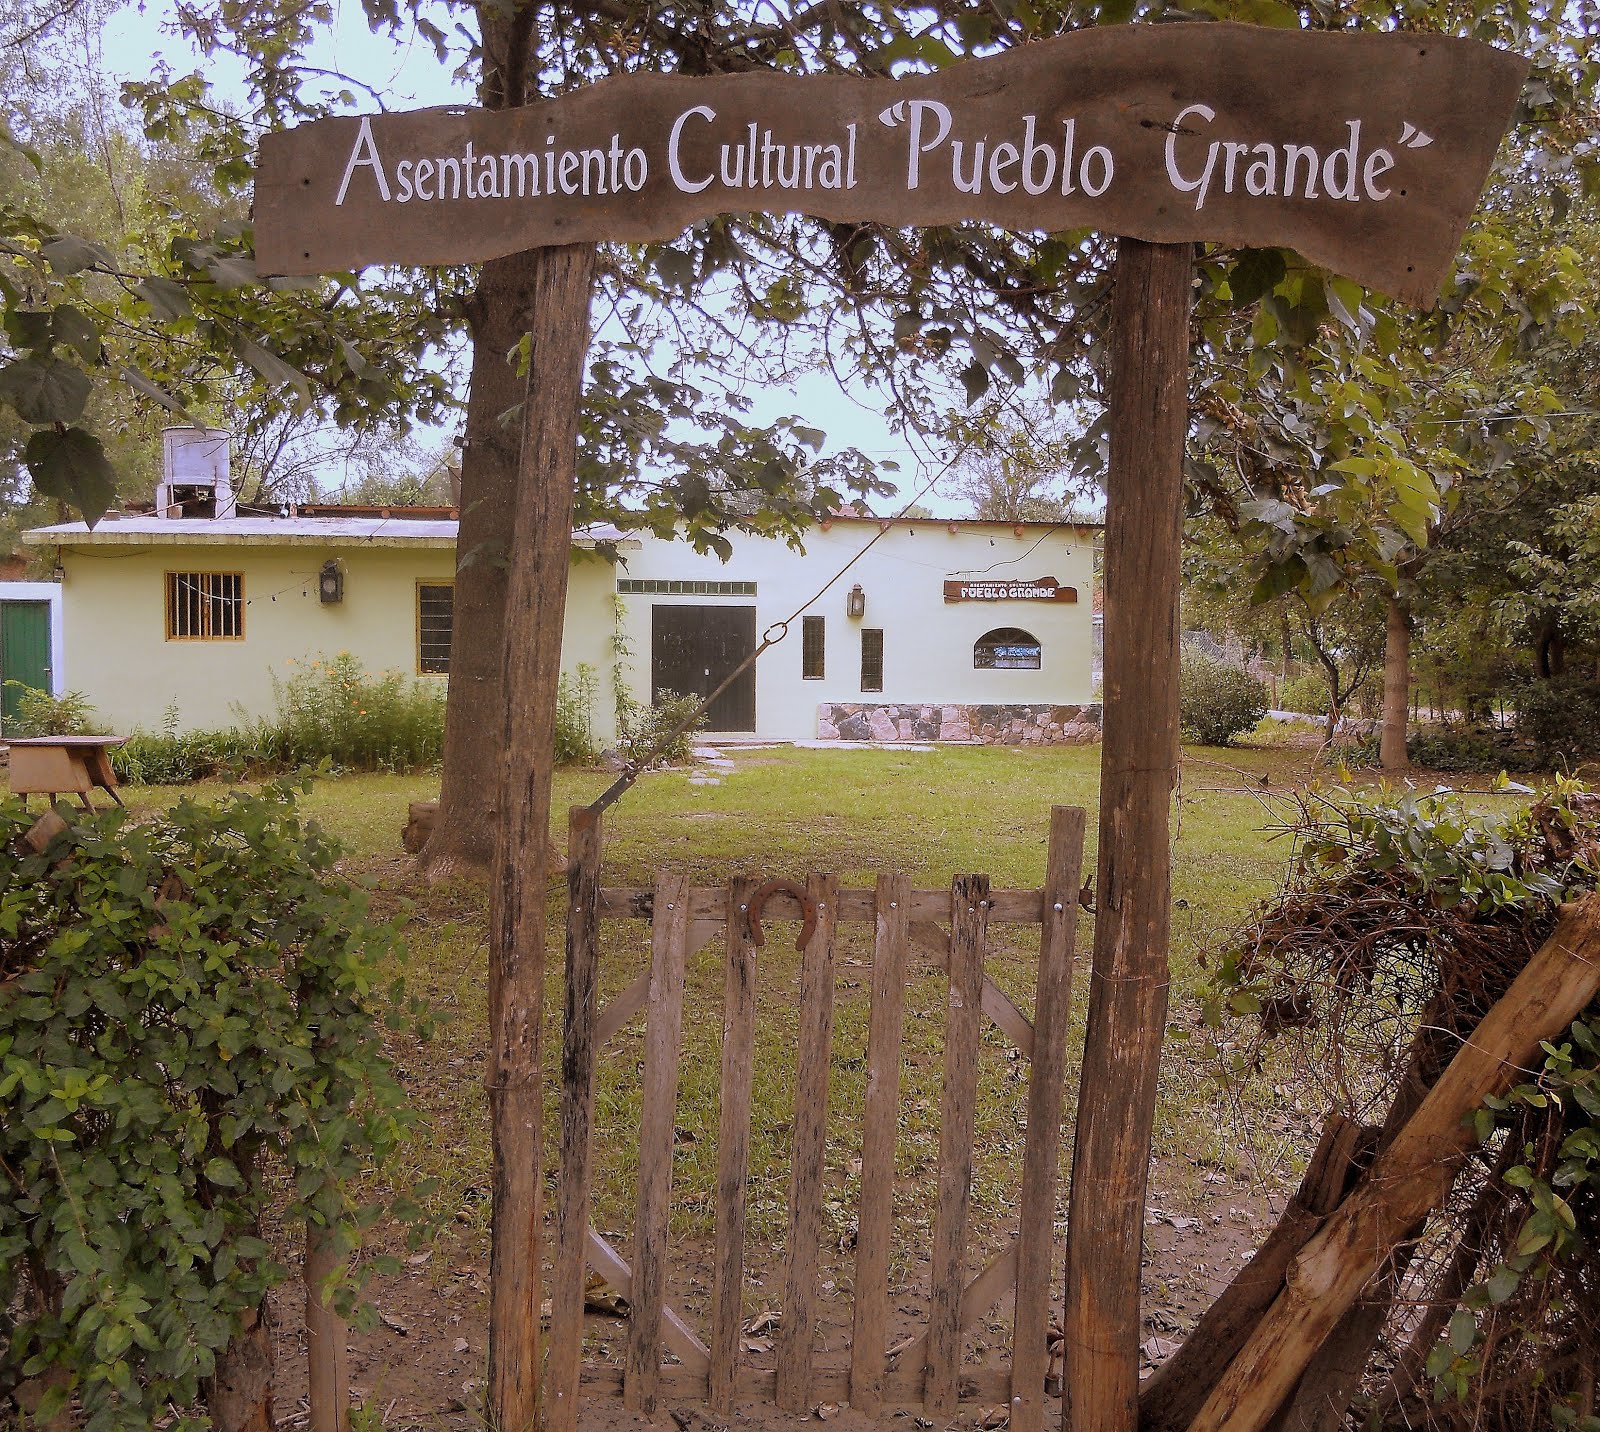 Asentamiento Cultural "Pueblo Grande"